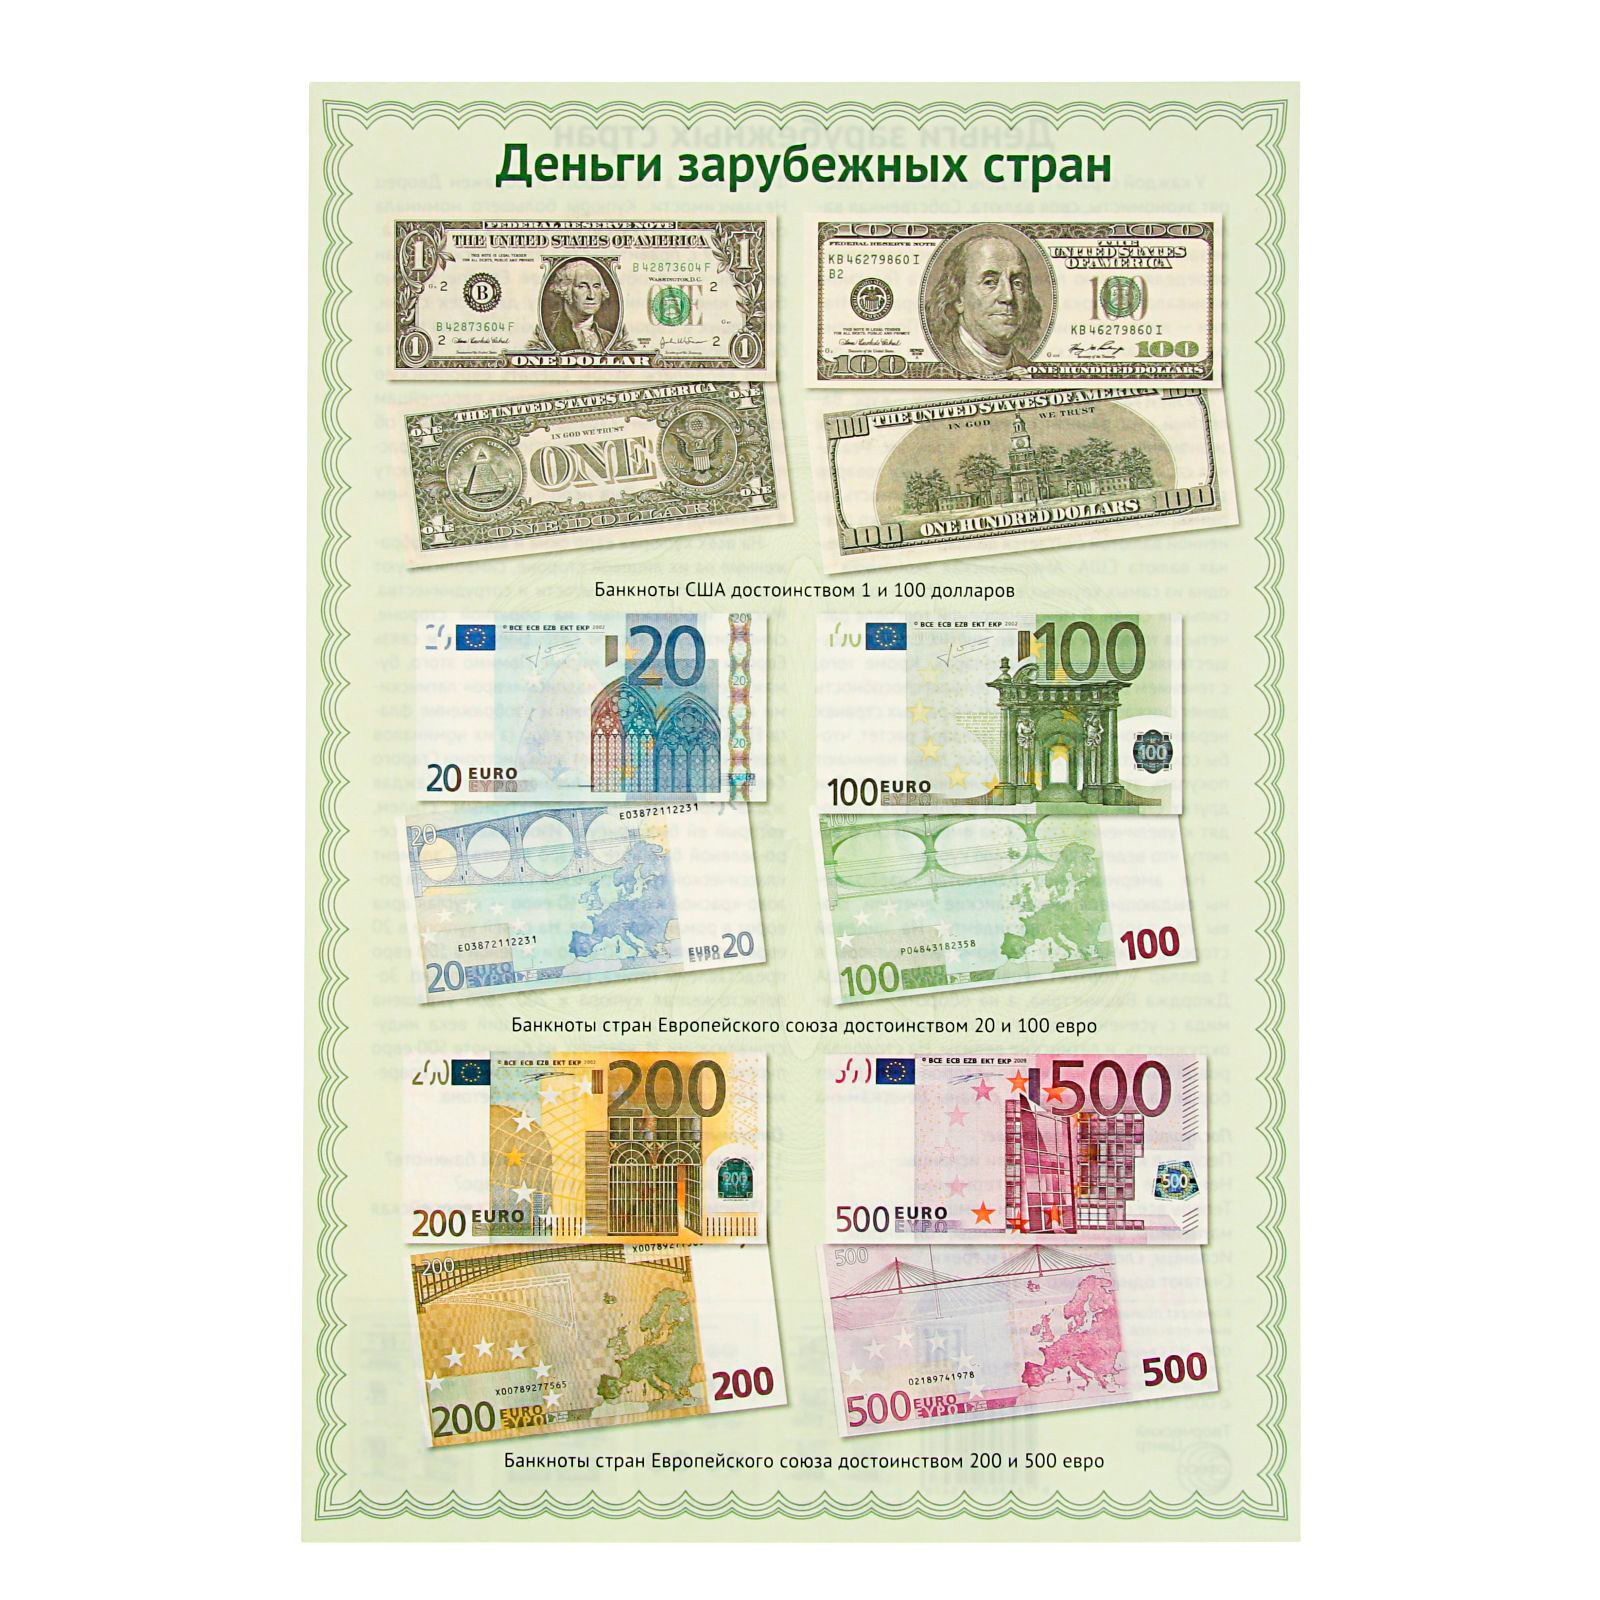 Знаки денежных купюр. Современные бумажные деньги. Иностранные бумажные деньги. Плакат с купюрами. Изображение денежных купюр и мелочи.